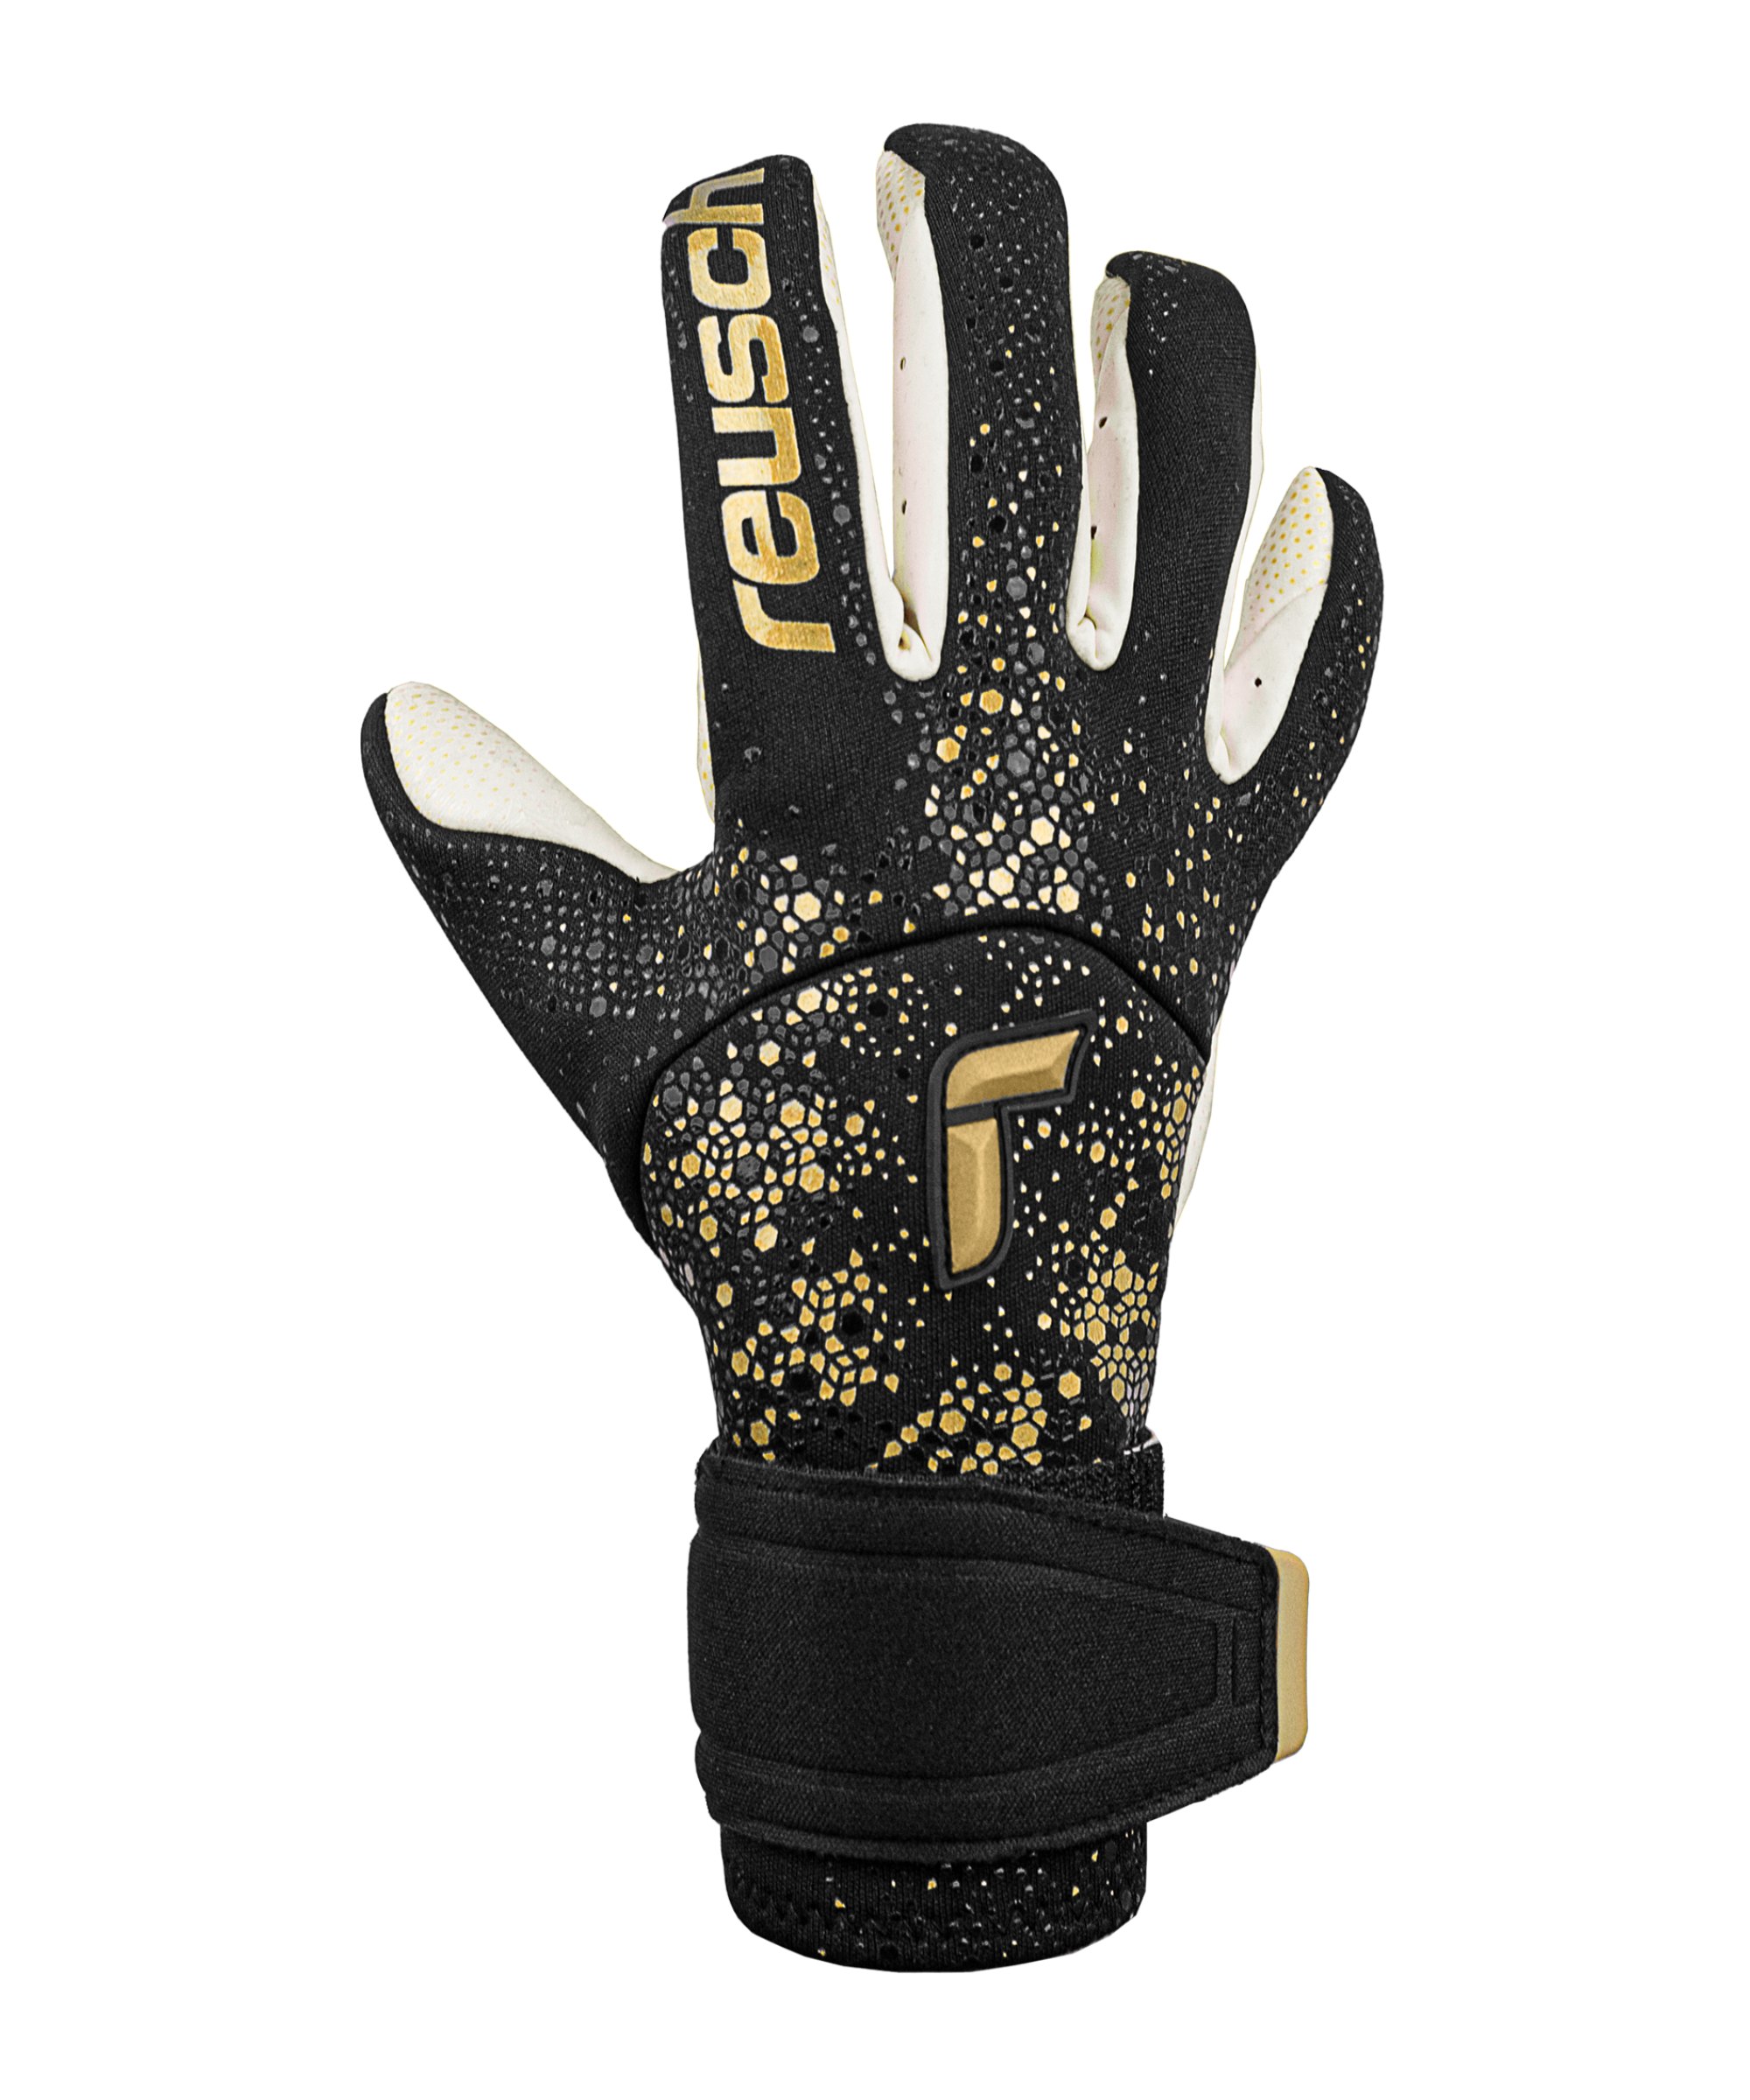 Reusch Pure Contact Gold X GluePrint TW-Handschuhe Schwarz Gold F7707 - schwarz